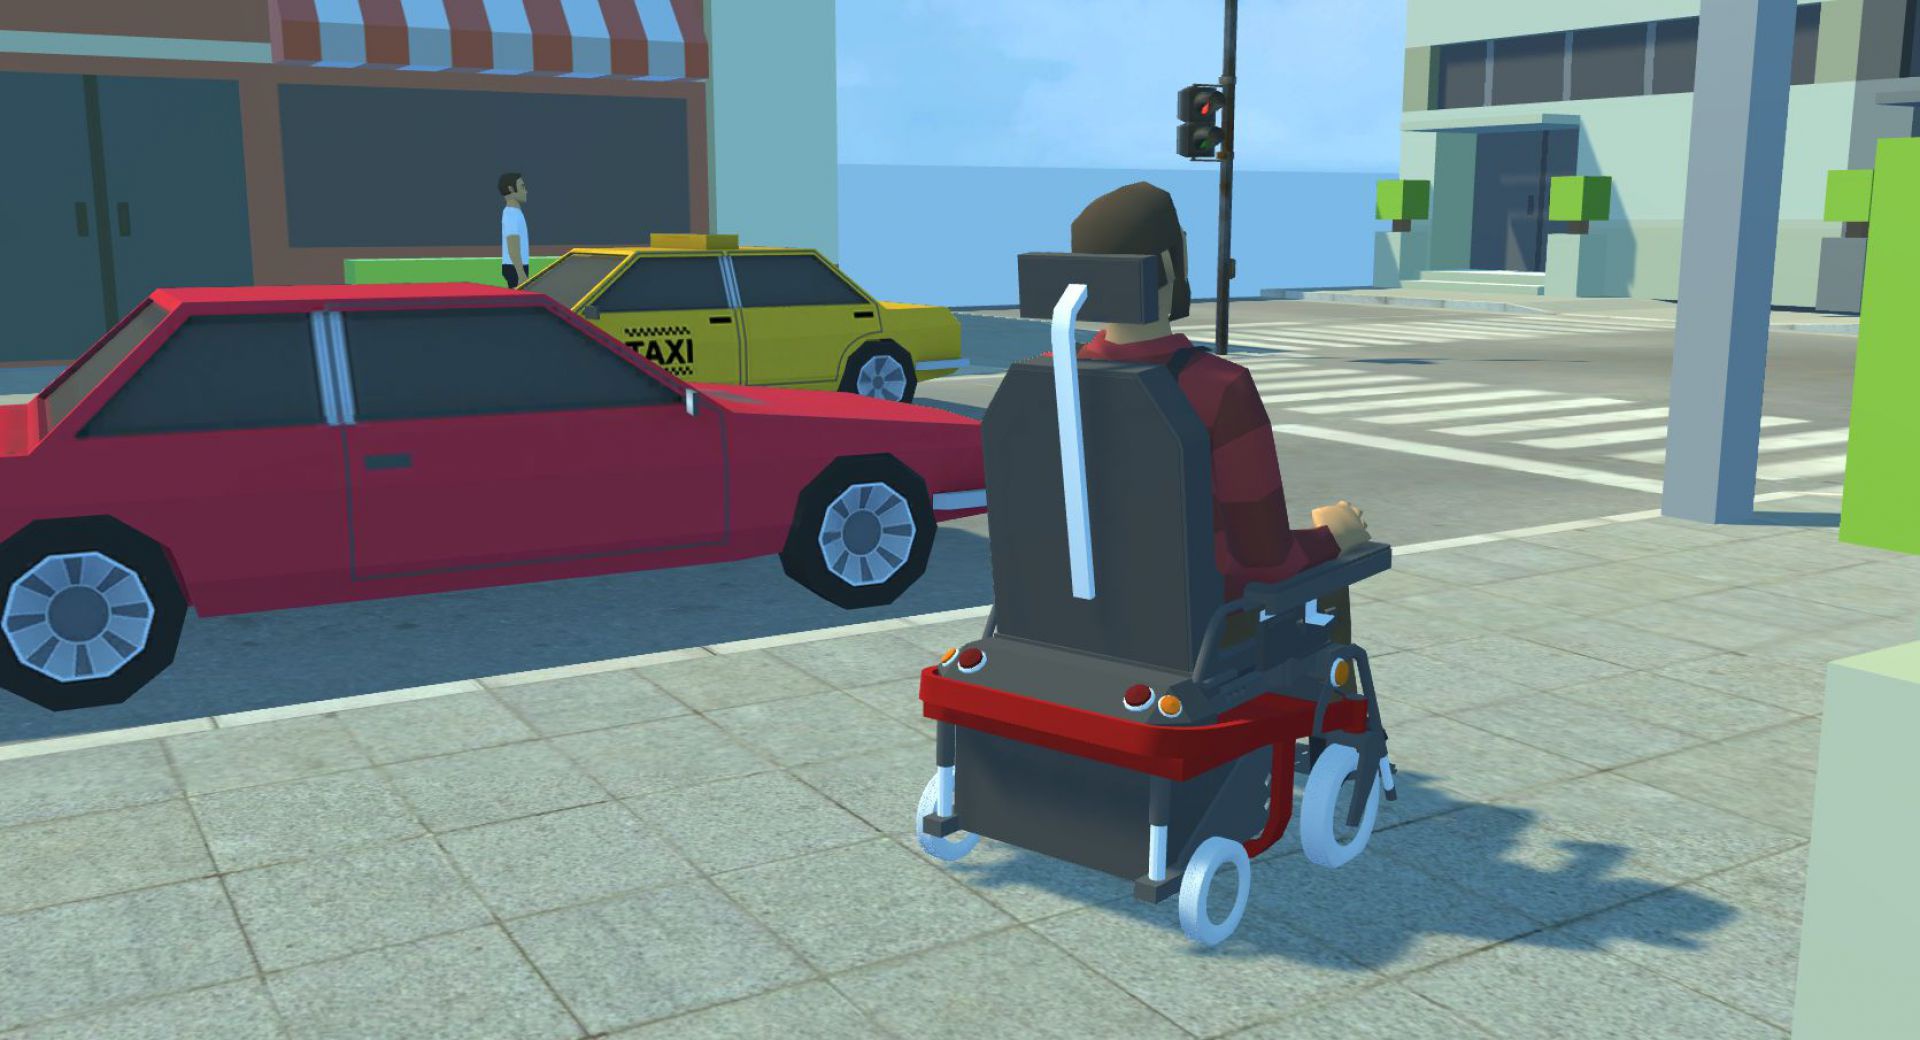 WheelSim VR - E-Rollstuhlsimulator zum Erlernen der Steuerung und Verbesserung der Fahrsicherheit mittels VR (Virtual Reality)